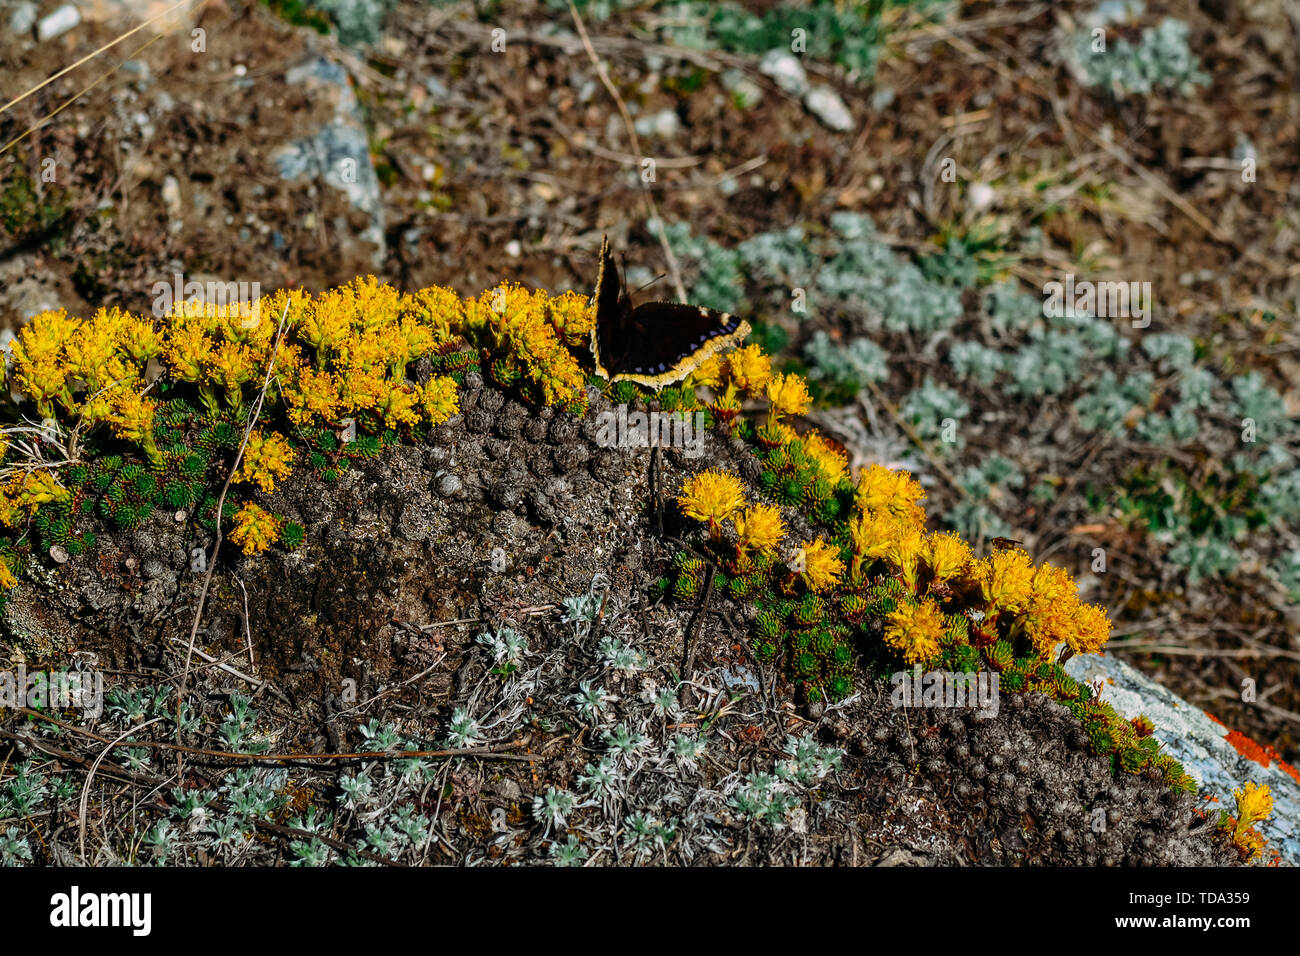 Foto von einem Schmetterling auf Blumen in einer bergigen Gegend auf einem Felsen Stockfoto